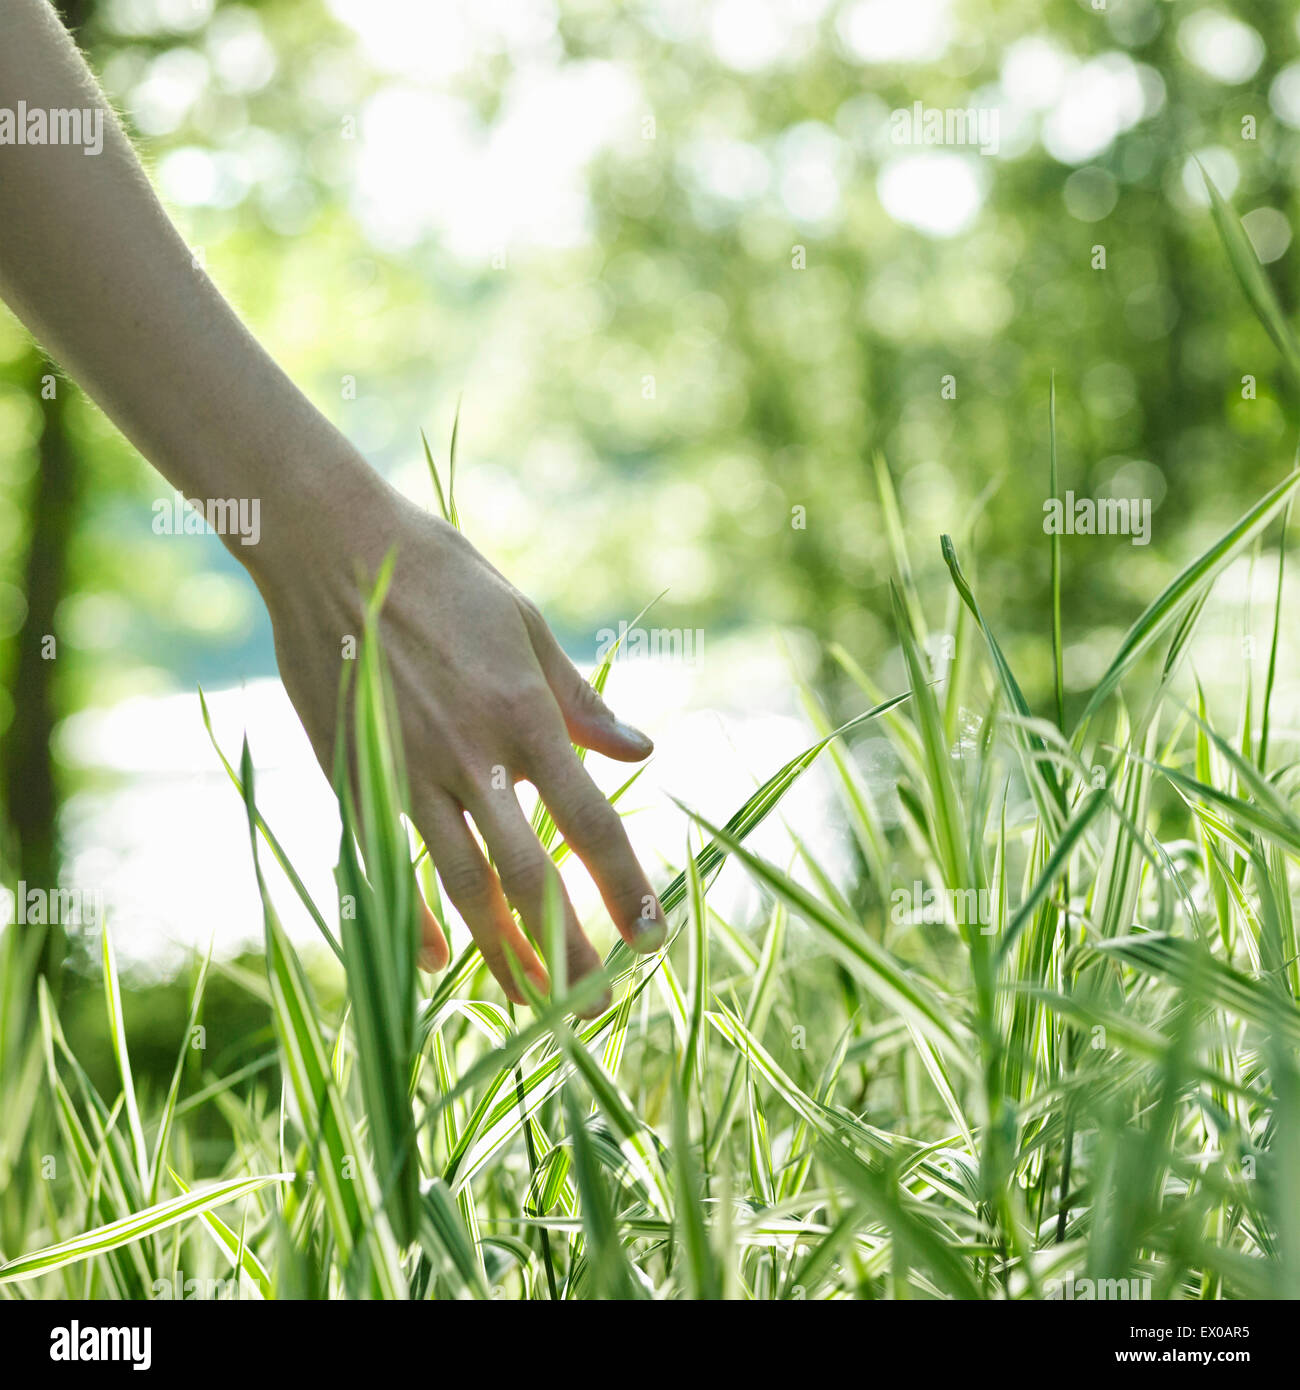 Touch grass